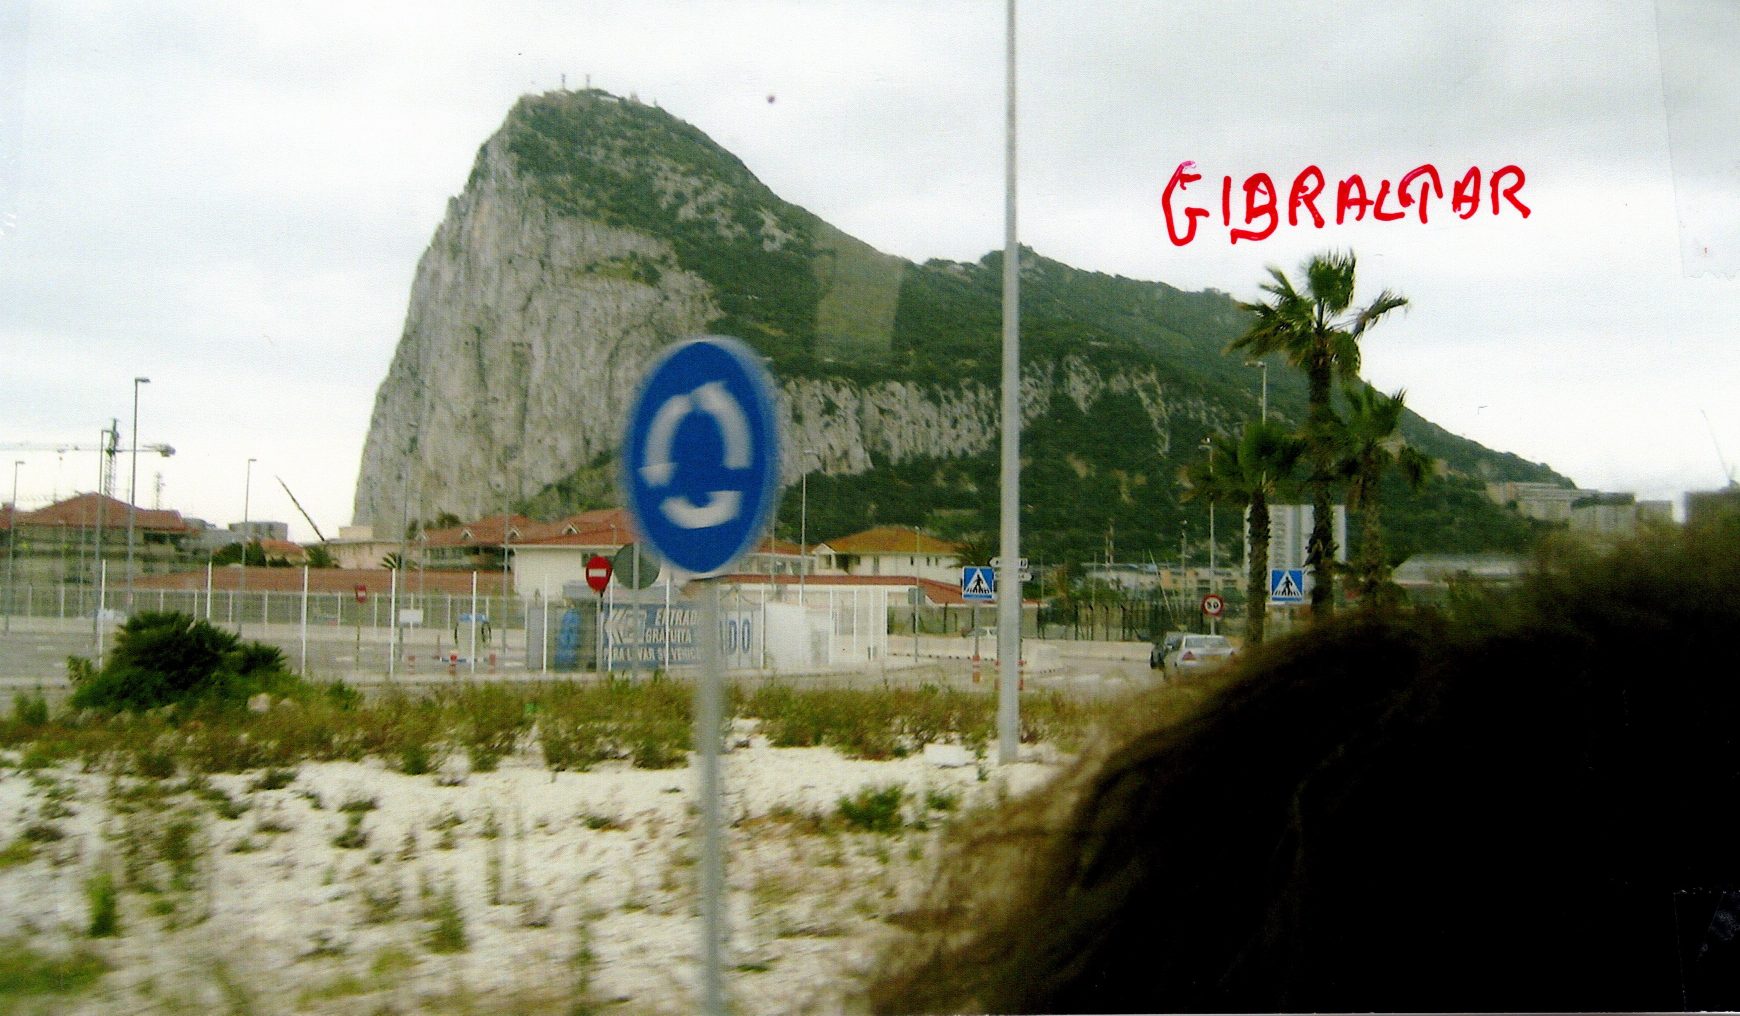 2018-Gibraltar